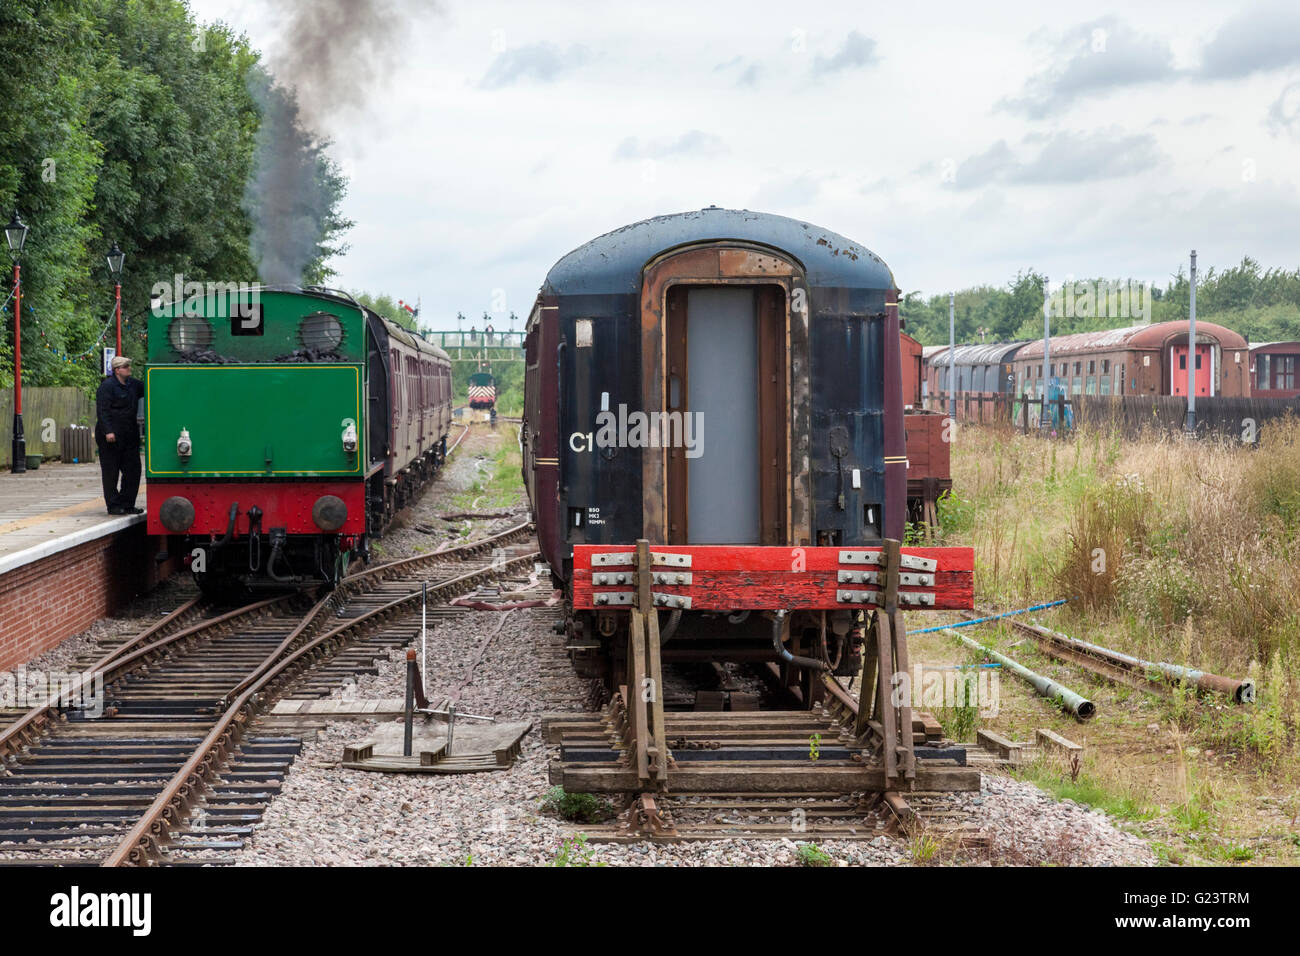 Vue générale du train à vapeur restauré et autre matériel roulant non réhabilitées, Transport Heritage Centre, Nottingham, Nottinghamshire, Angleterre Ruddington Banque D'Images